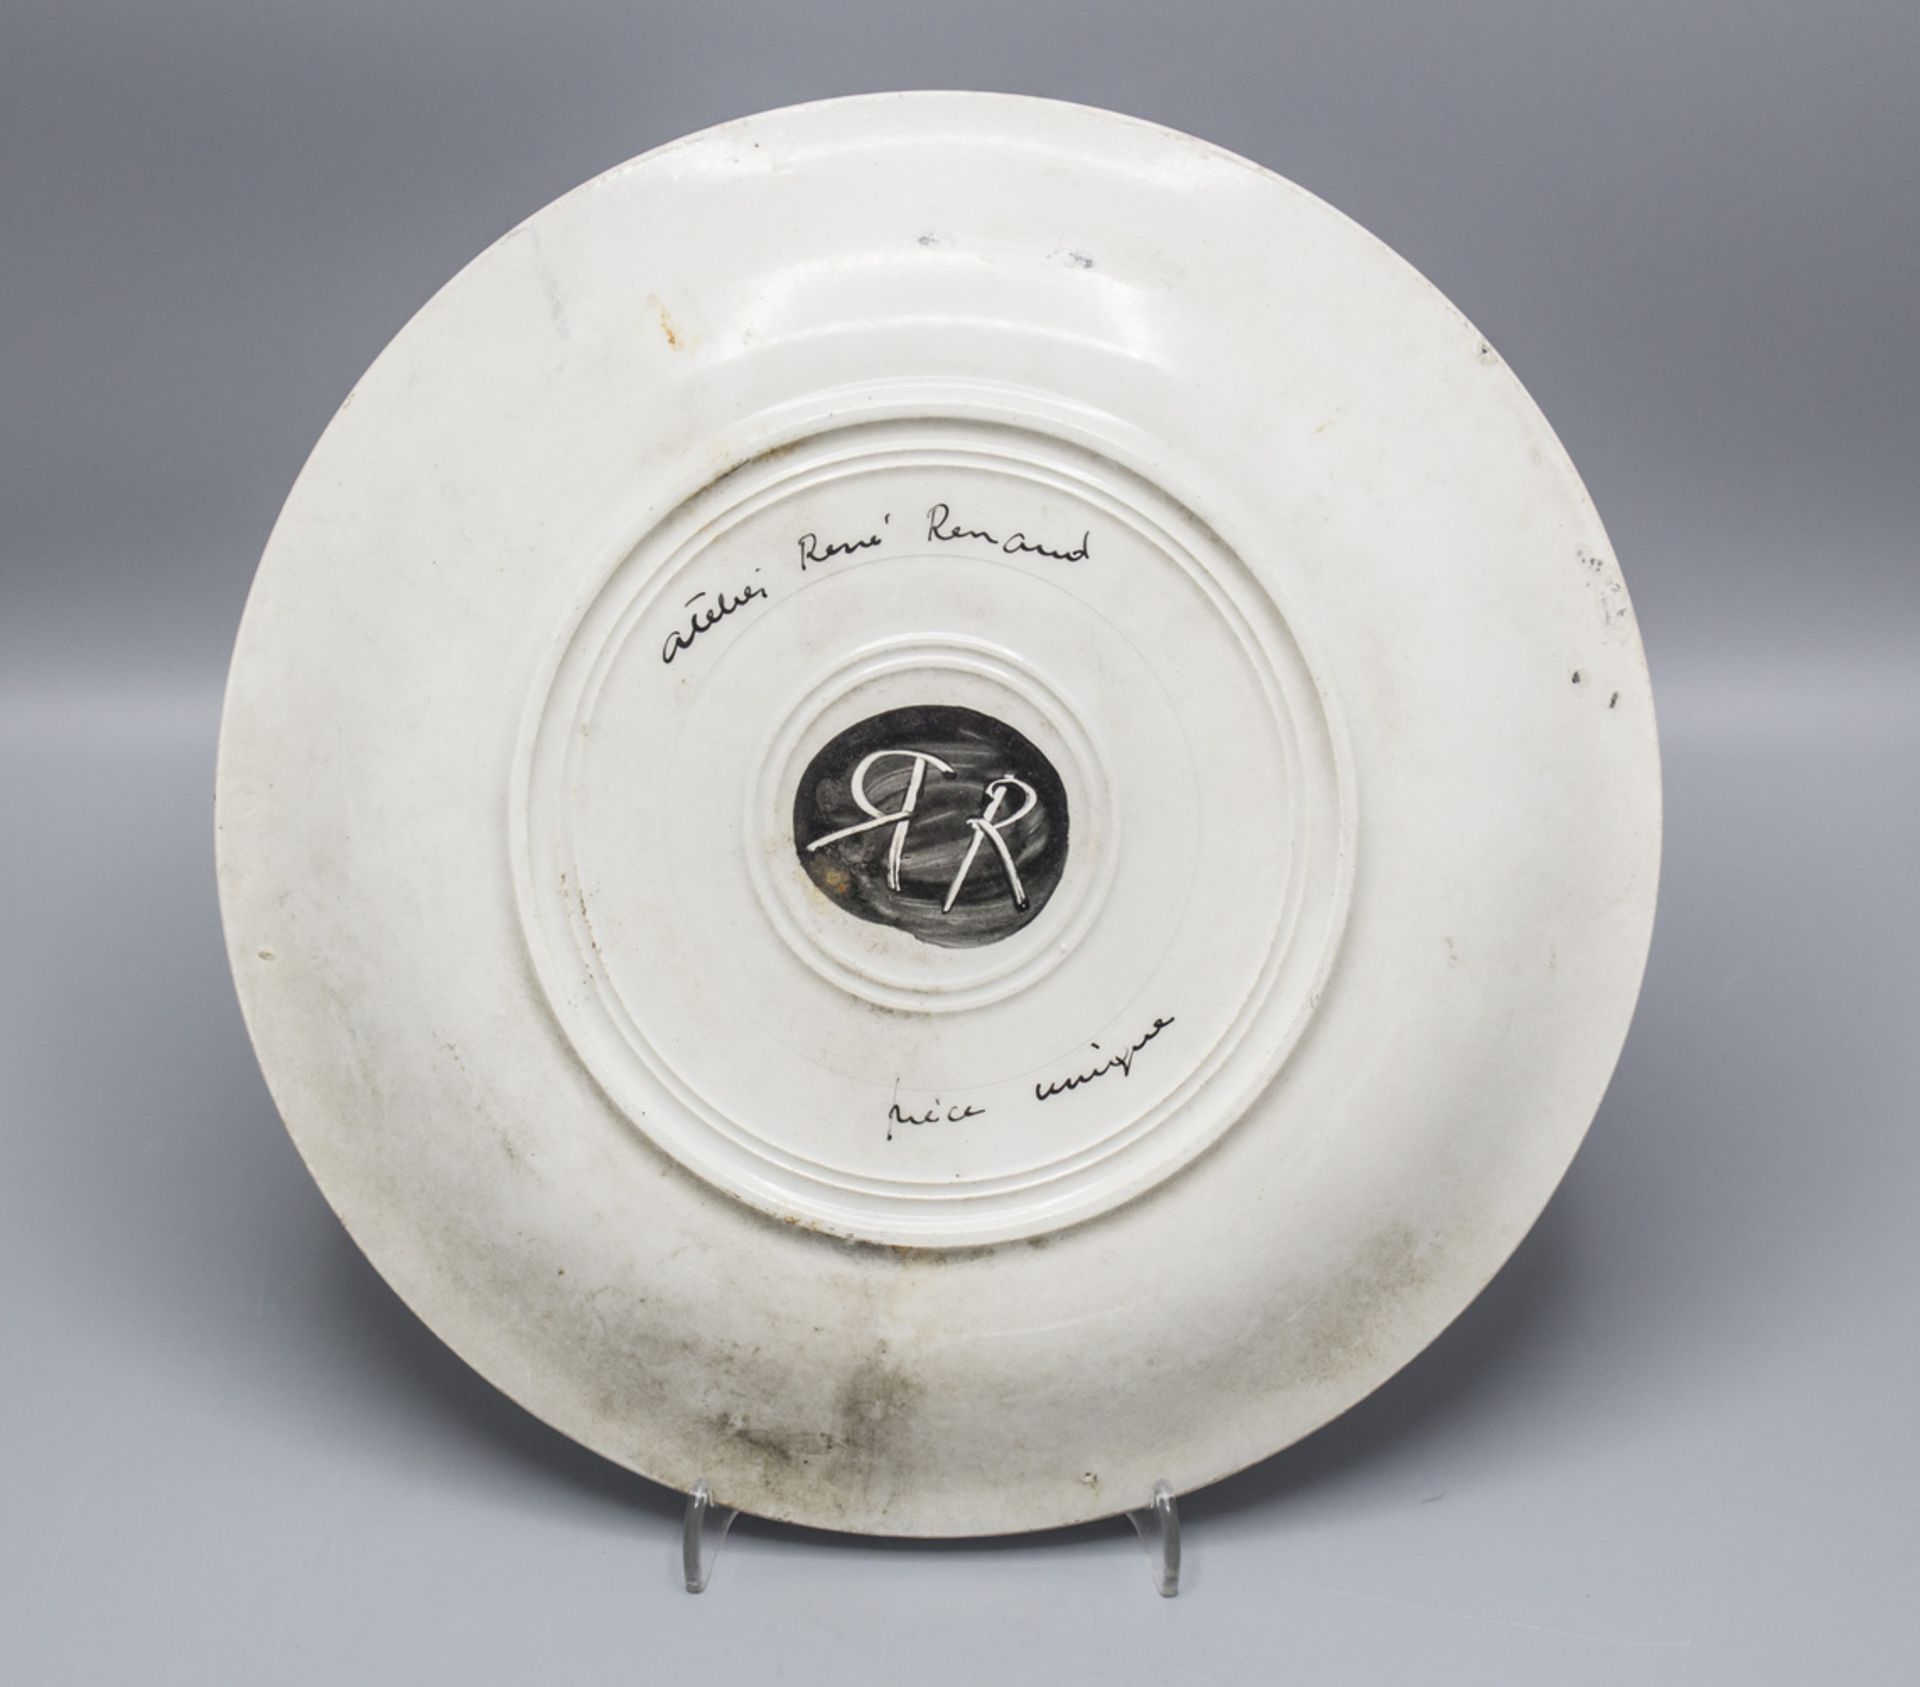 Paar Studio Keramik Teller / 2 studio ceramique plates, Atelier Réne Renaud, ... - Image 7 of 7